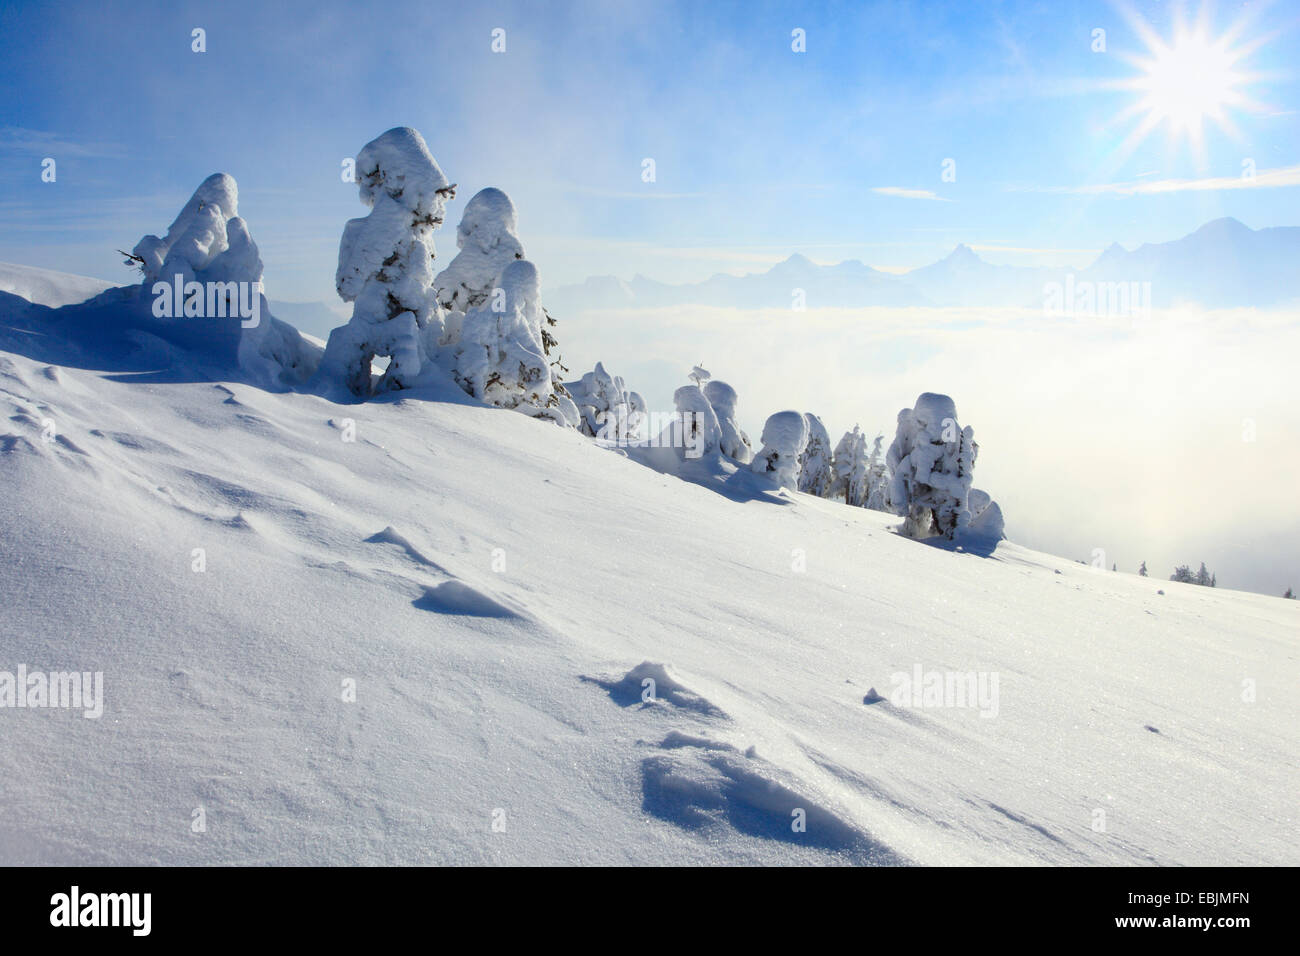 Vue panoramique depuis le Niederhorn couverte de neige, Suisse, Oberland Bernois, Alpes Bernoises Banque D'Images